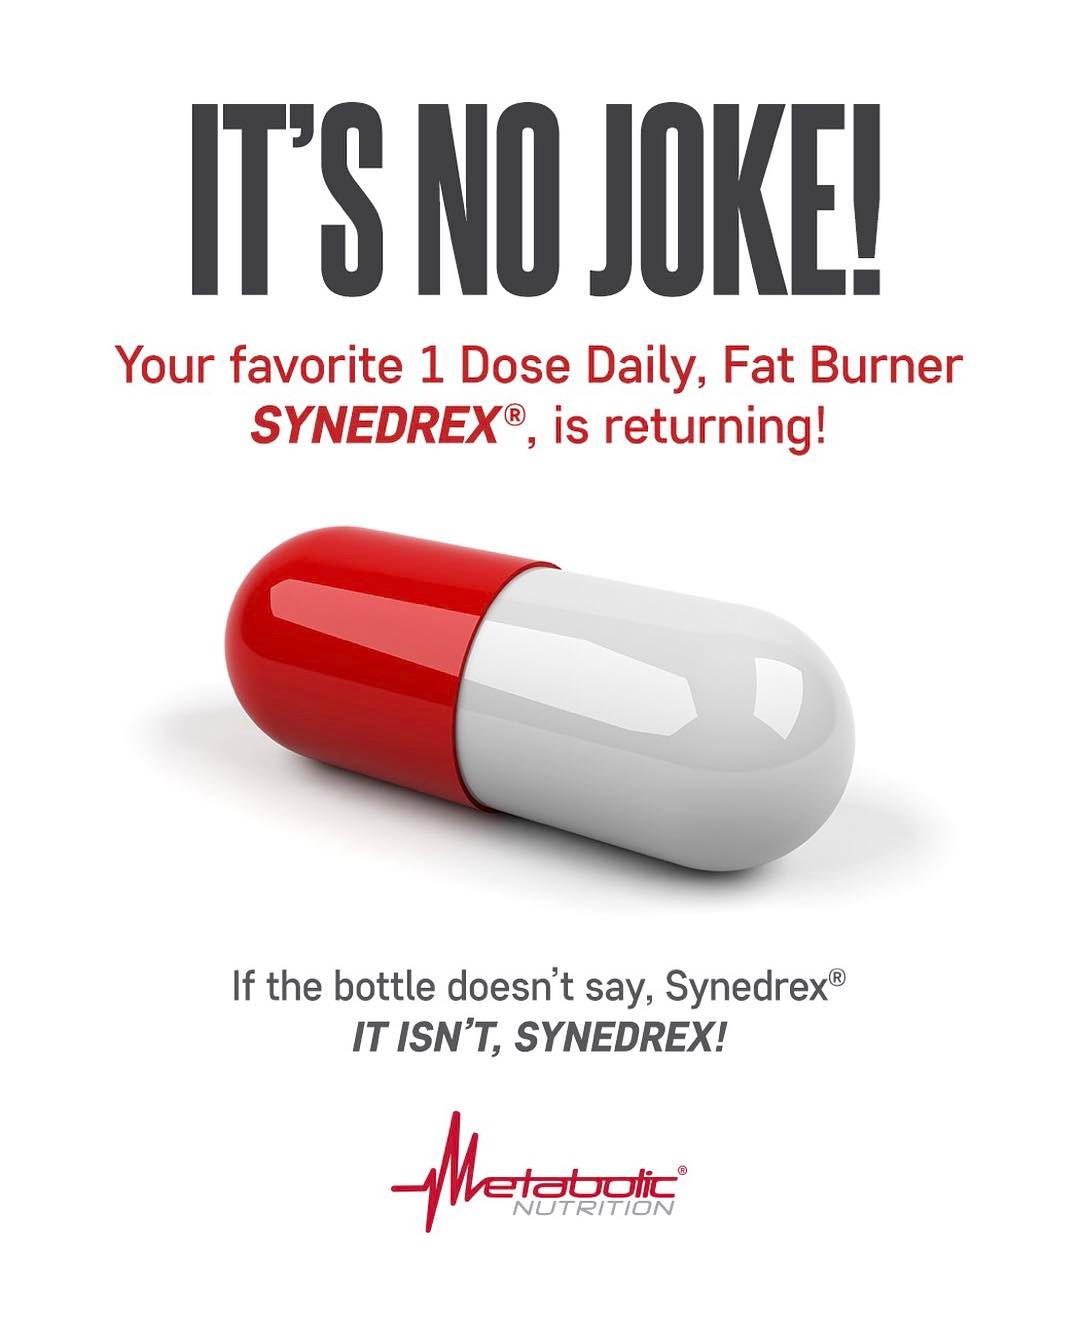 Metabolic Nutrition Synedrex Joke